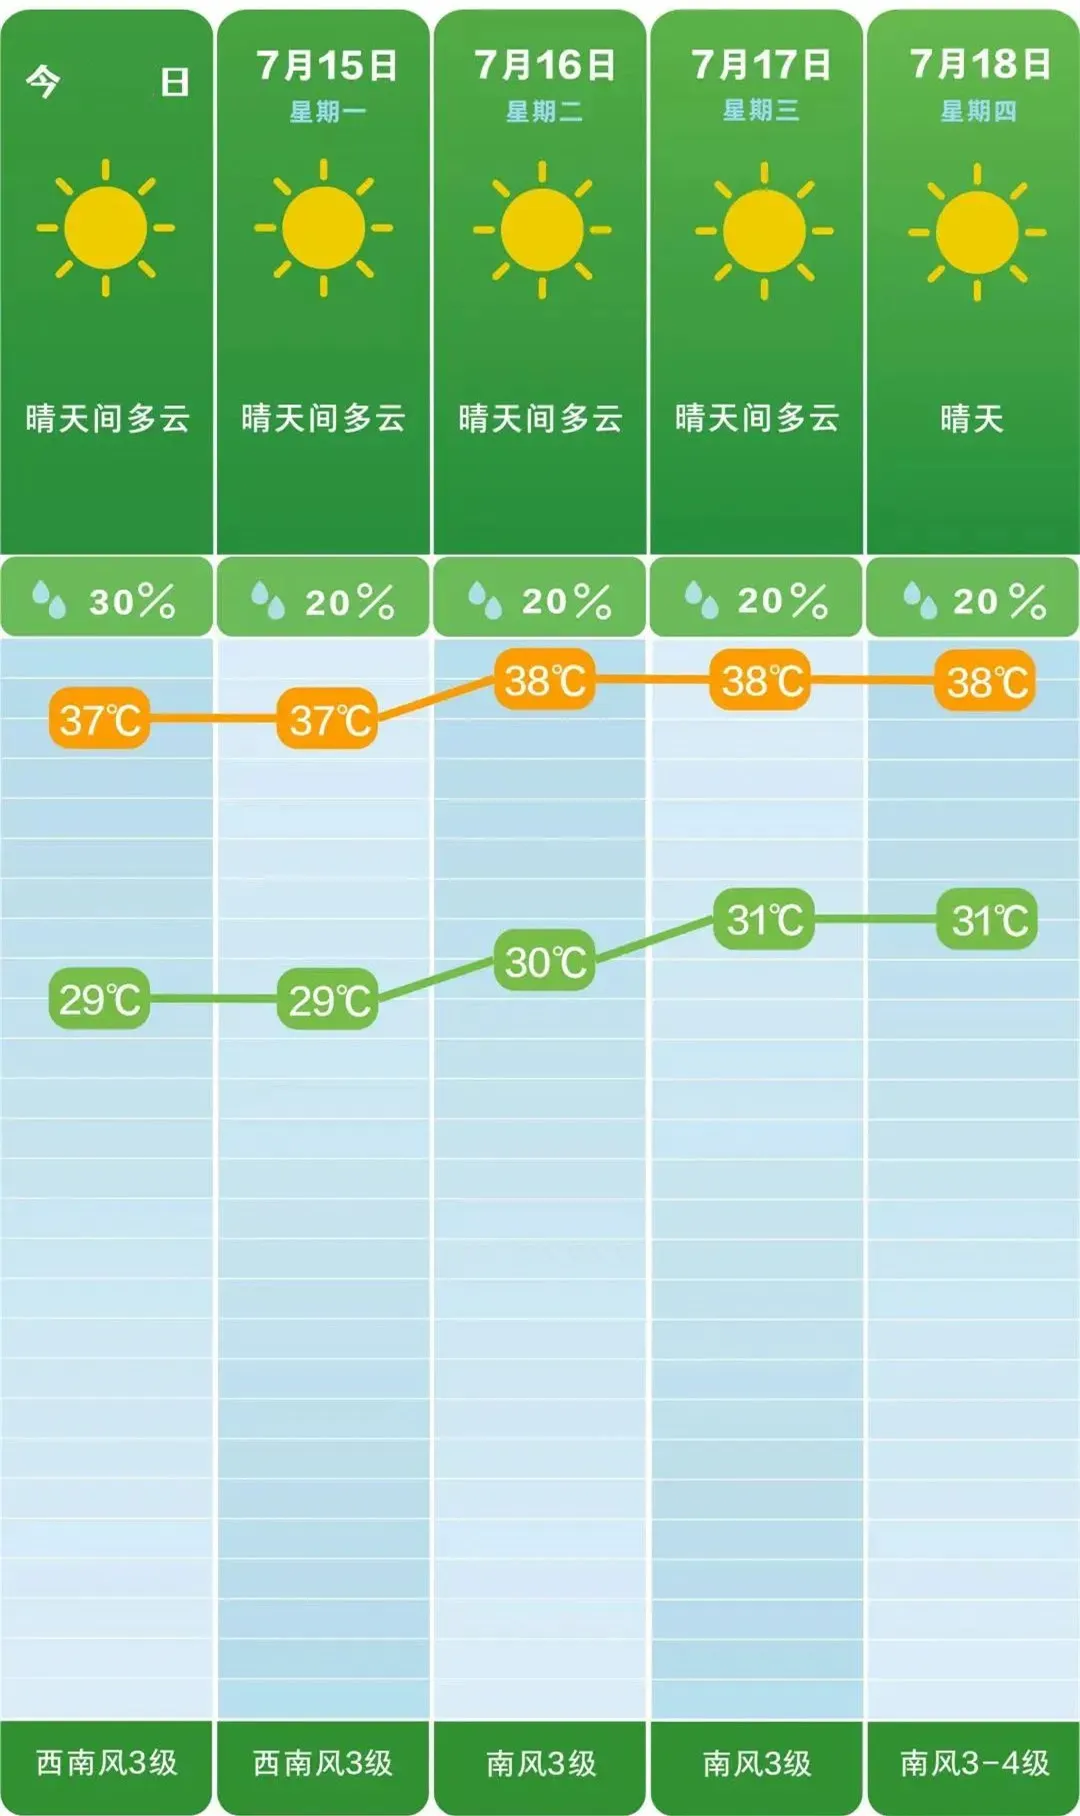 长沙未来5天天气预报高温黄色预警湖南省气象台07月13日16时发布高温